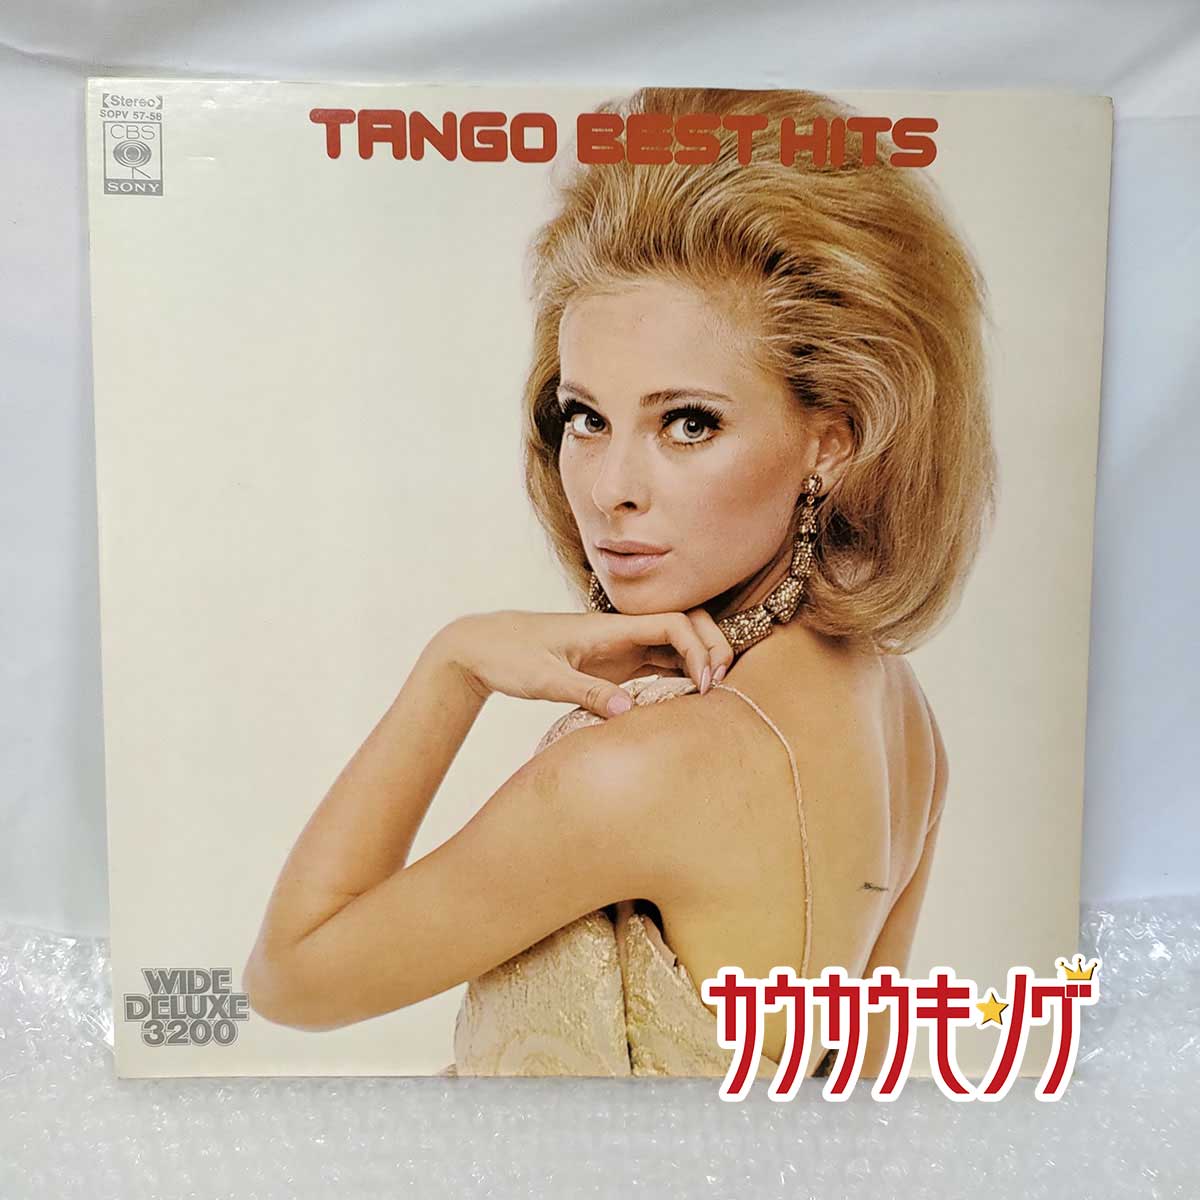 【中古】LP レコード TANGO BEST HITS アルゼンチン・タンゴ 名曲 ラ・クンパルシータ 他